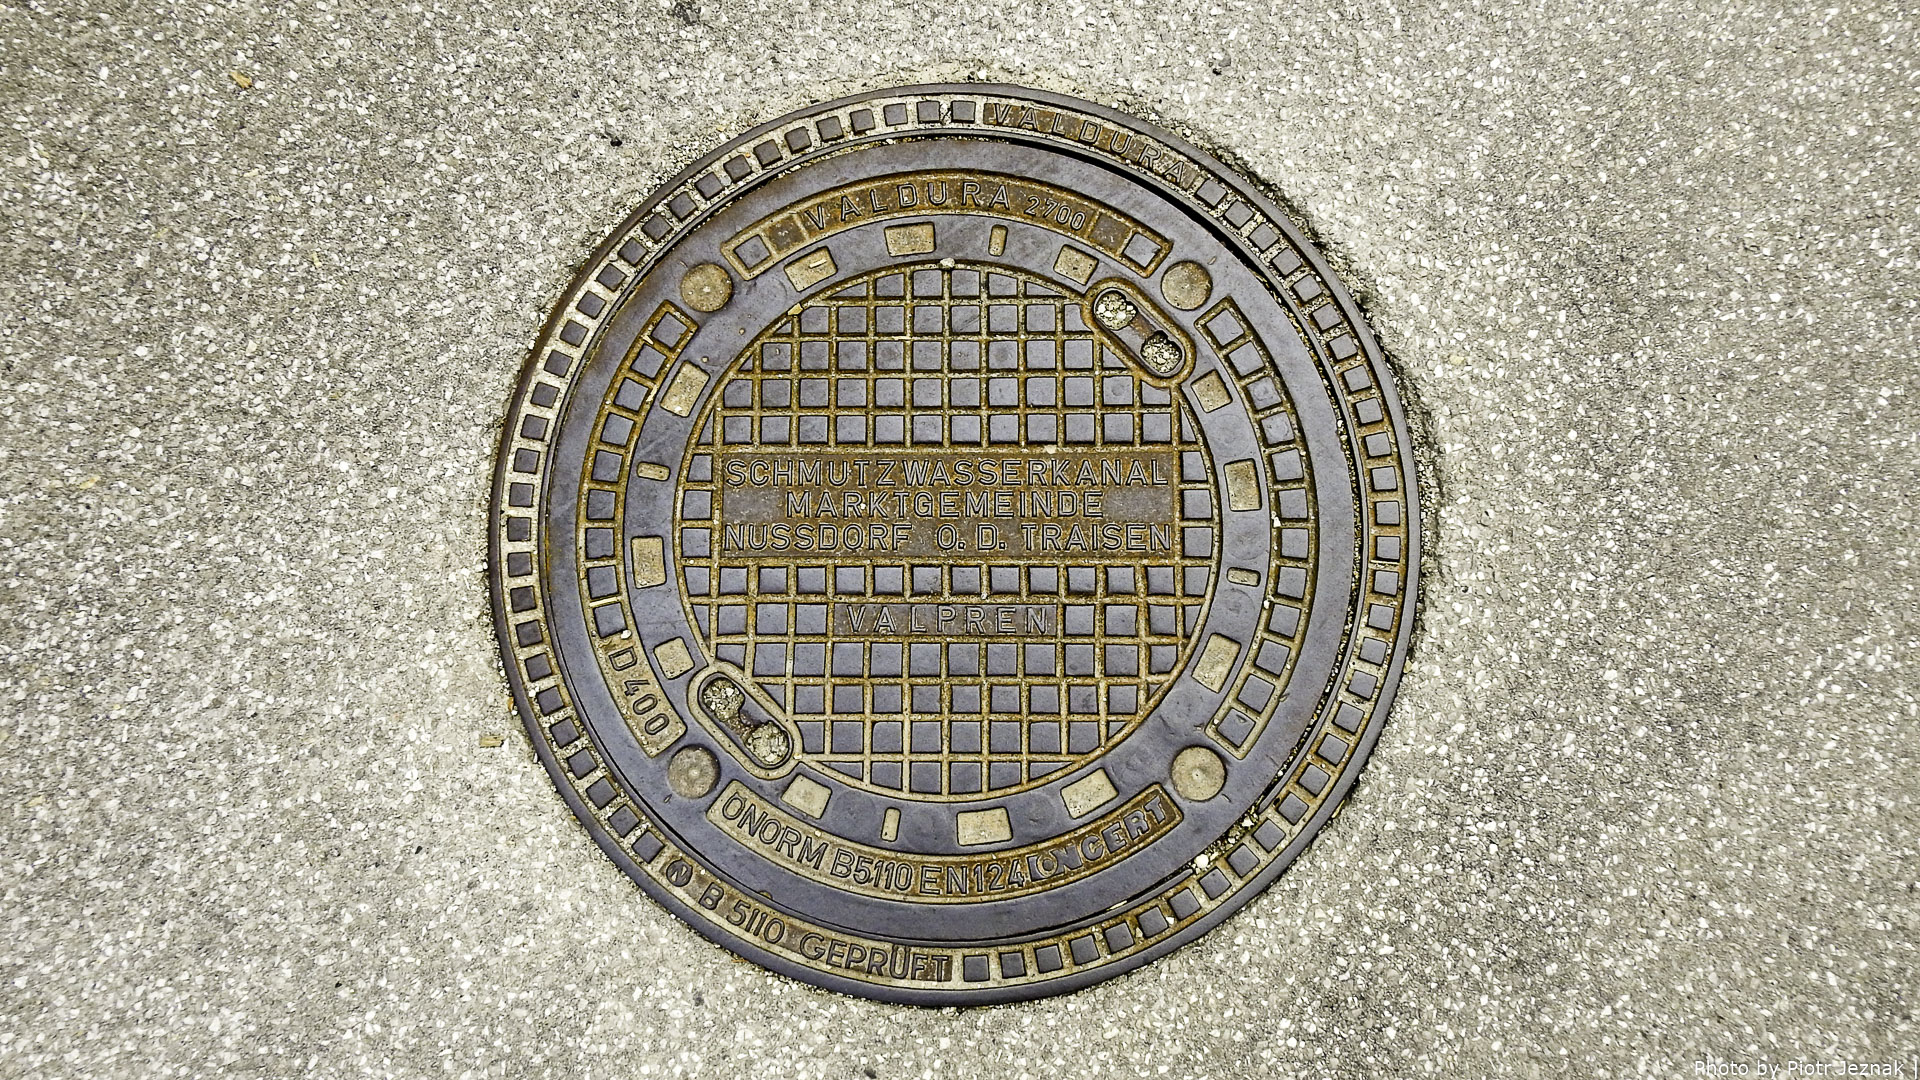 Manhole cover in Nußdorf ob der Traisen